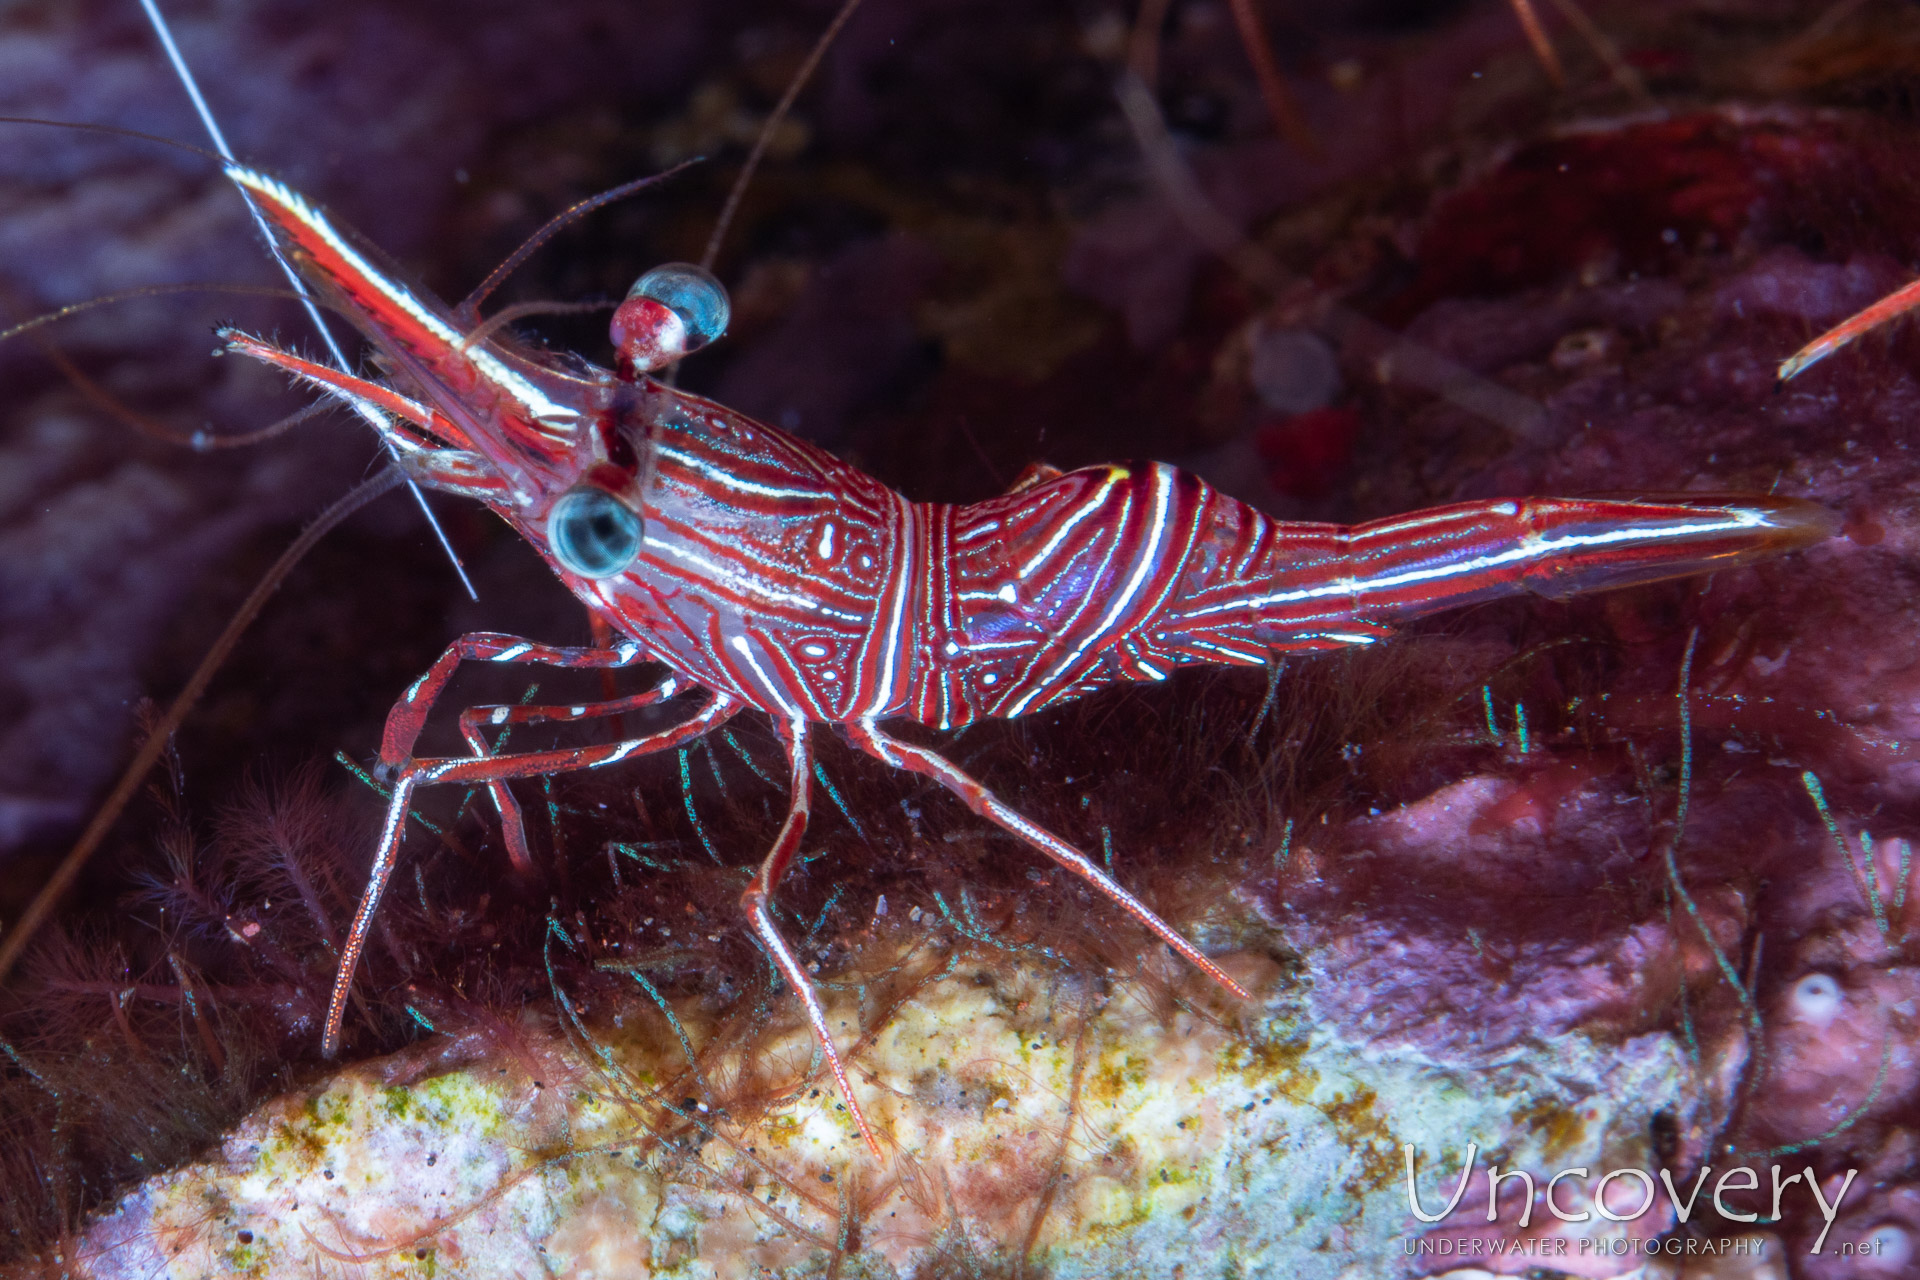 Dancing Shrimp (rhynchocinetes Durbanensis), photo taken in Indonesia, Bali, Tulamben, Pantai Lahar